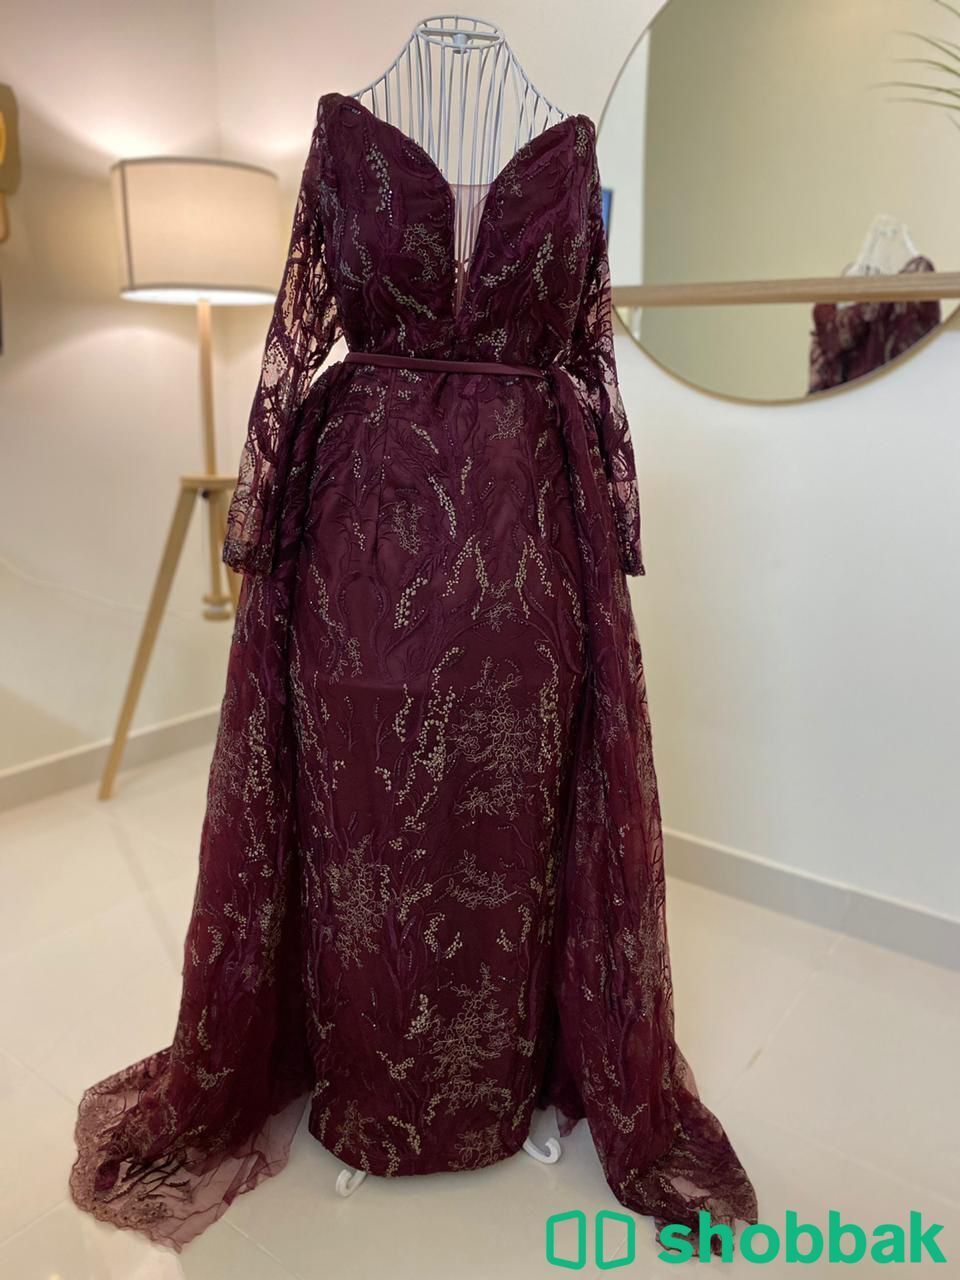 فستان انيق جداا للبيع Shobbak Saudi Arabia